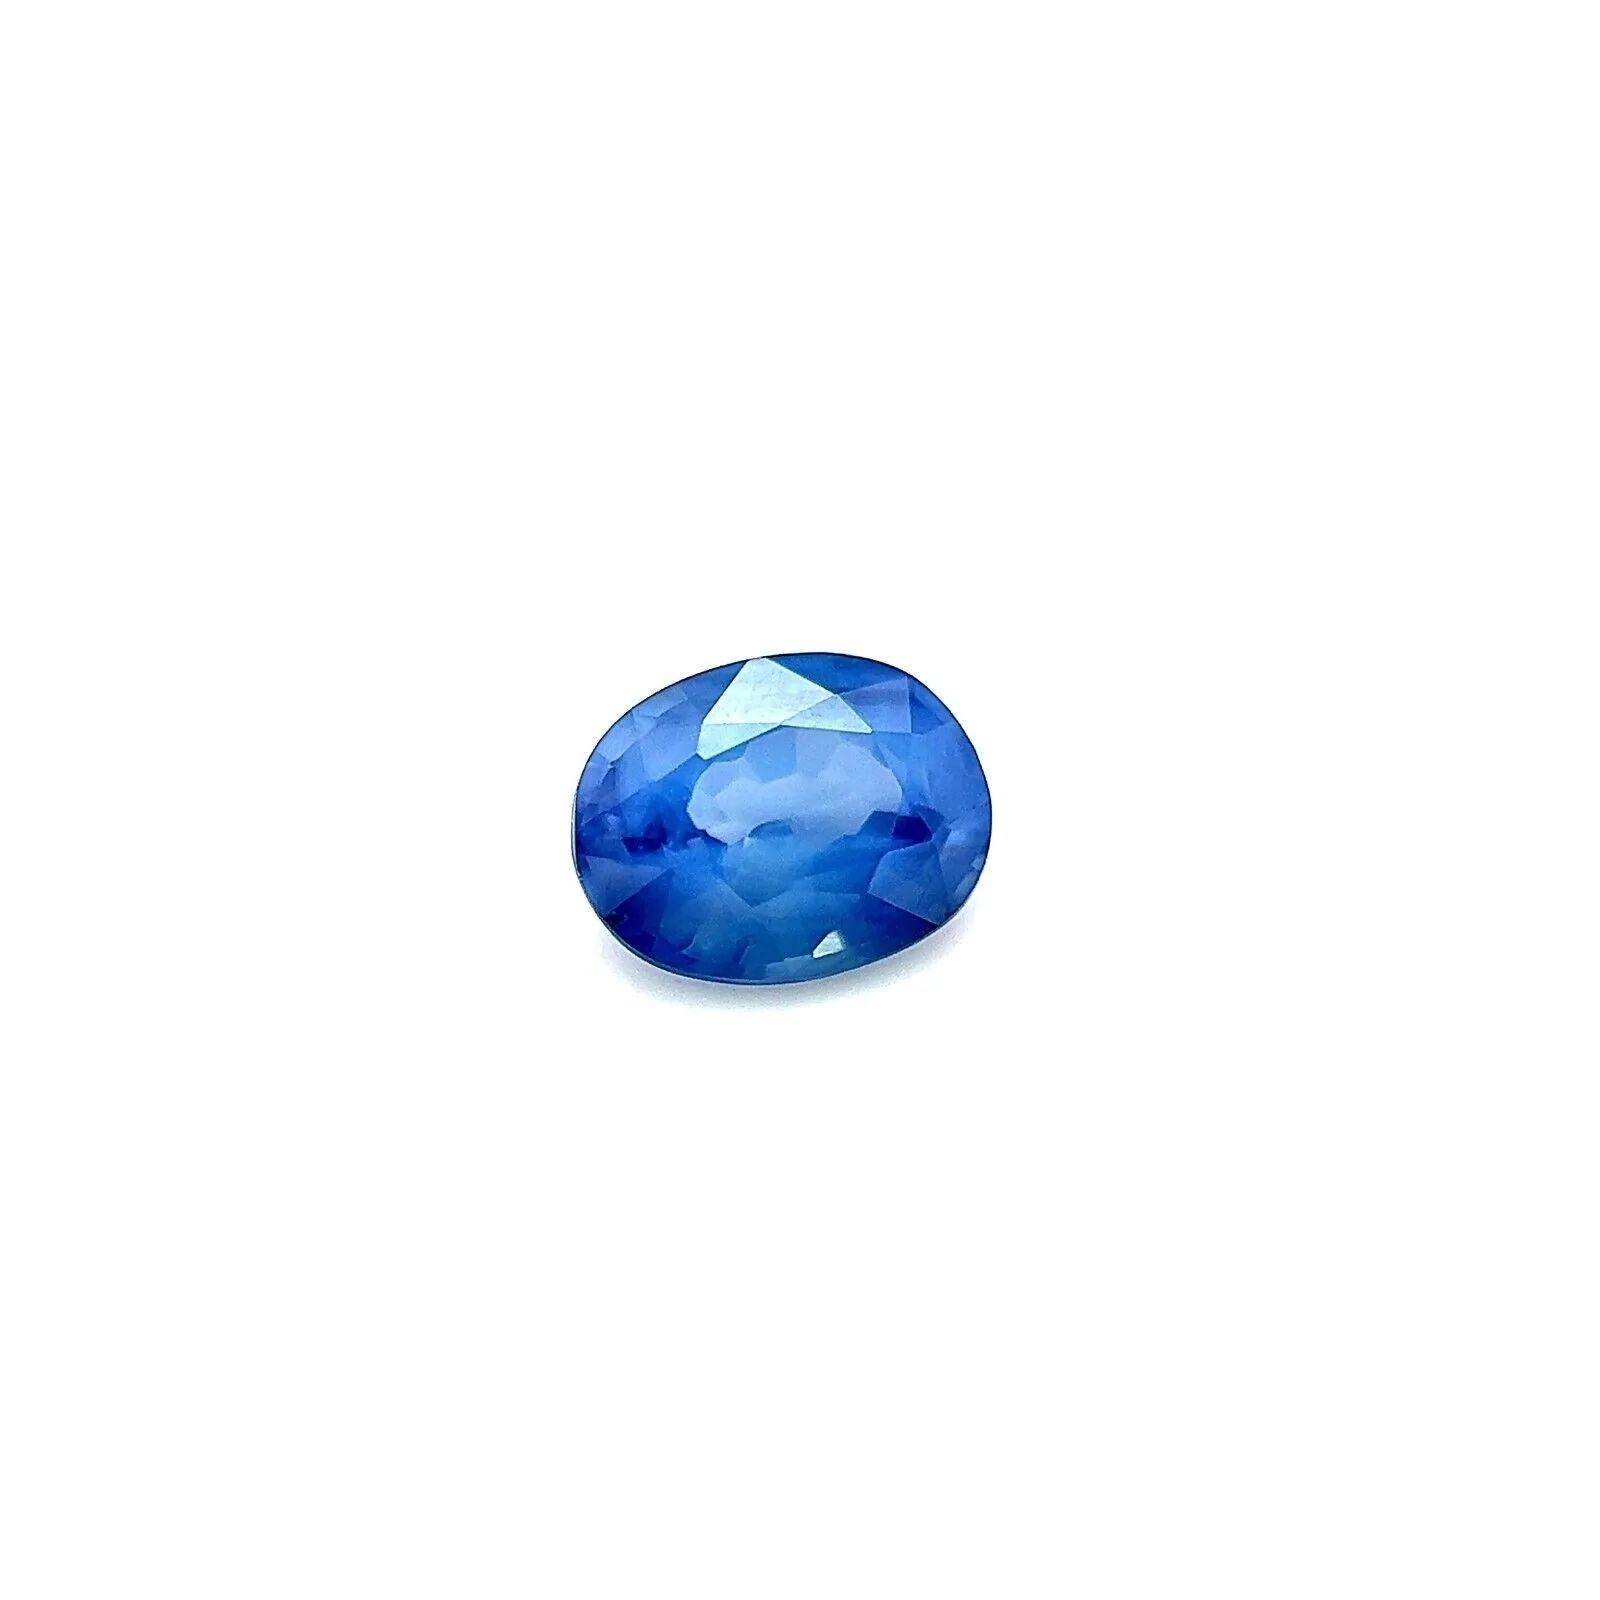 Einzigartiger 0.58ct Grüner Blauer Natürlicher Ceylon Saphir Oval Schliff Seltener Edelstein 5.5x4.3mm VS

Natürlicher, einzigartiger, lebhaft grüner, blauer Ceylon-Saphir-Edelstein.
0,58 Karat mit einer schönen lebhaft grünblauen Farbe und guter